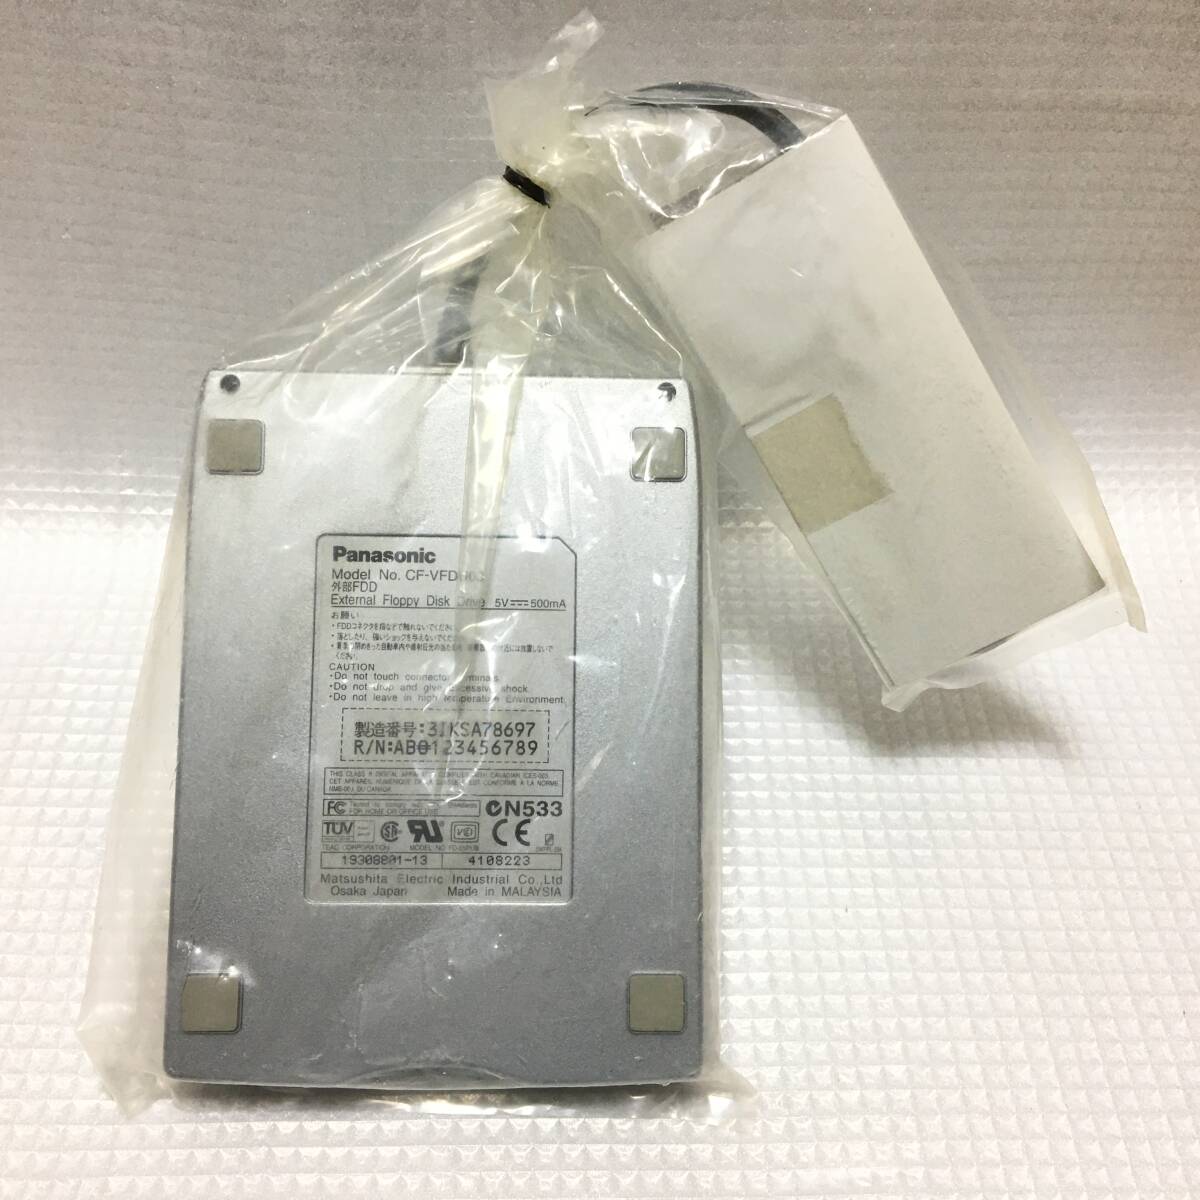 # не использовался Panasonic CF-VFDU03U Panasonic производства Note PC для USB подключение флоппи-дисковод нераспечатанный FDD